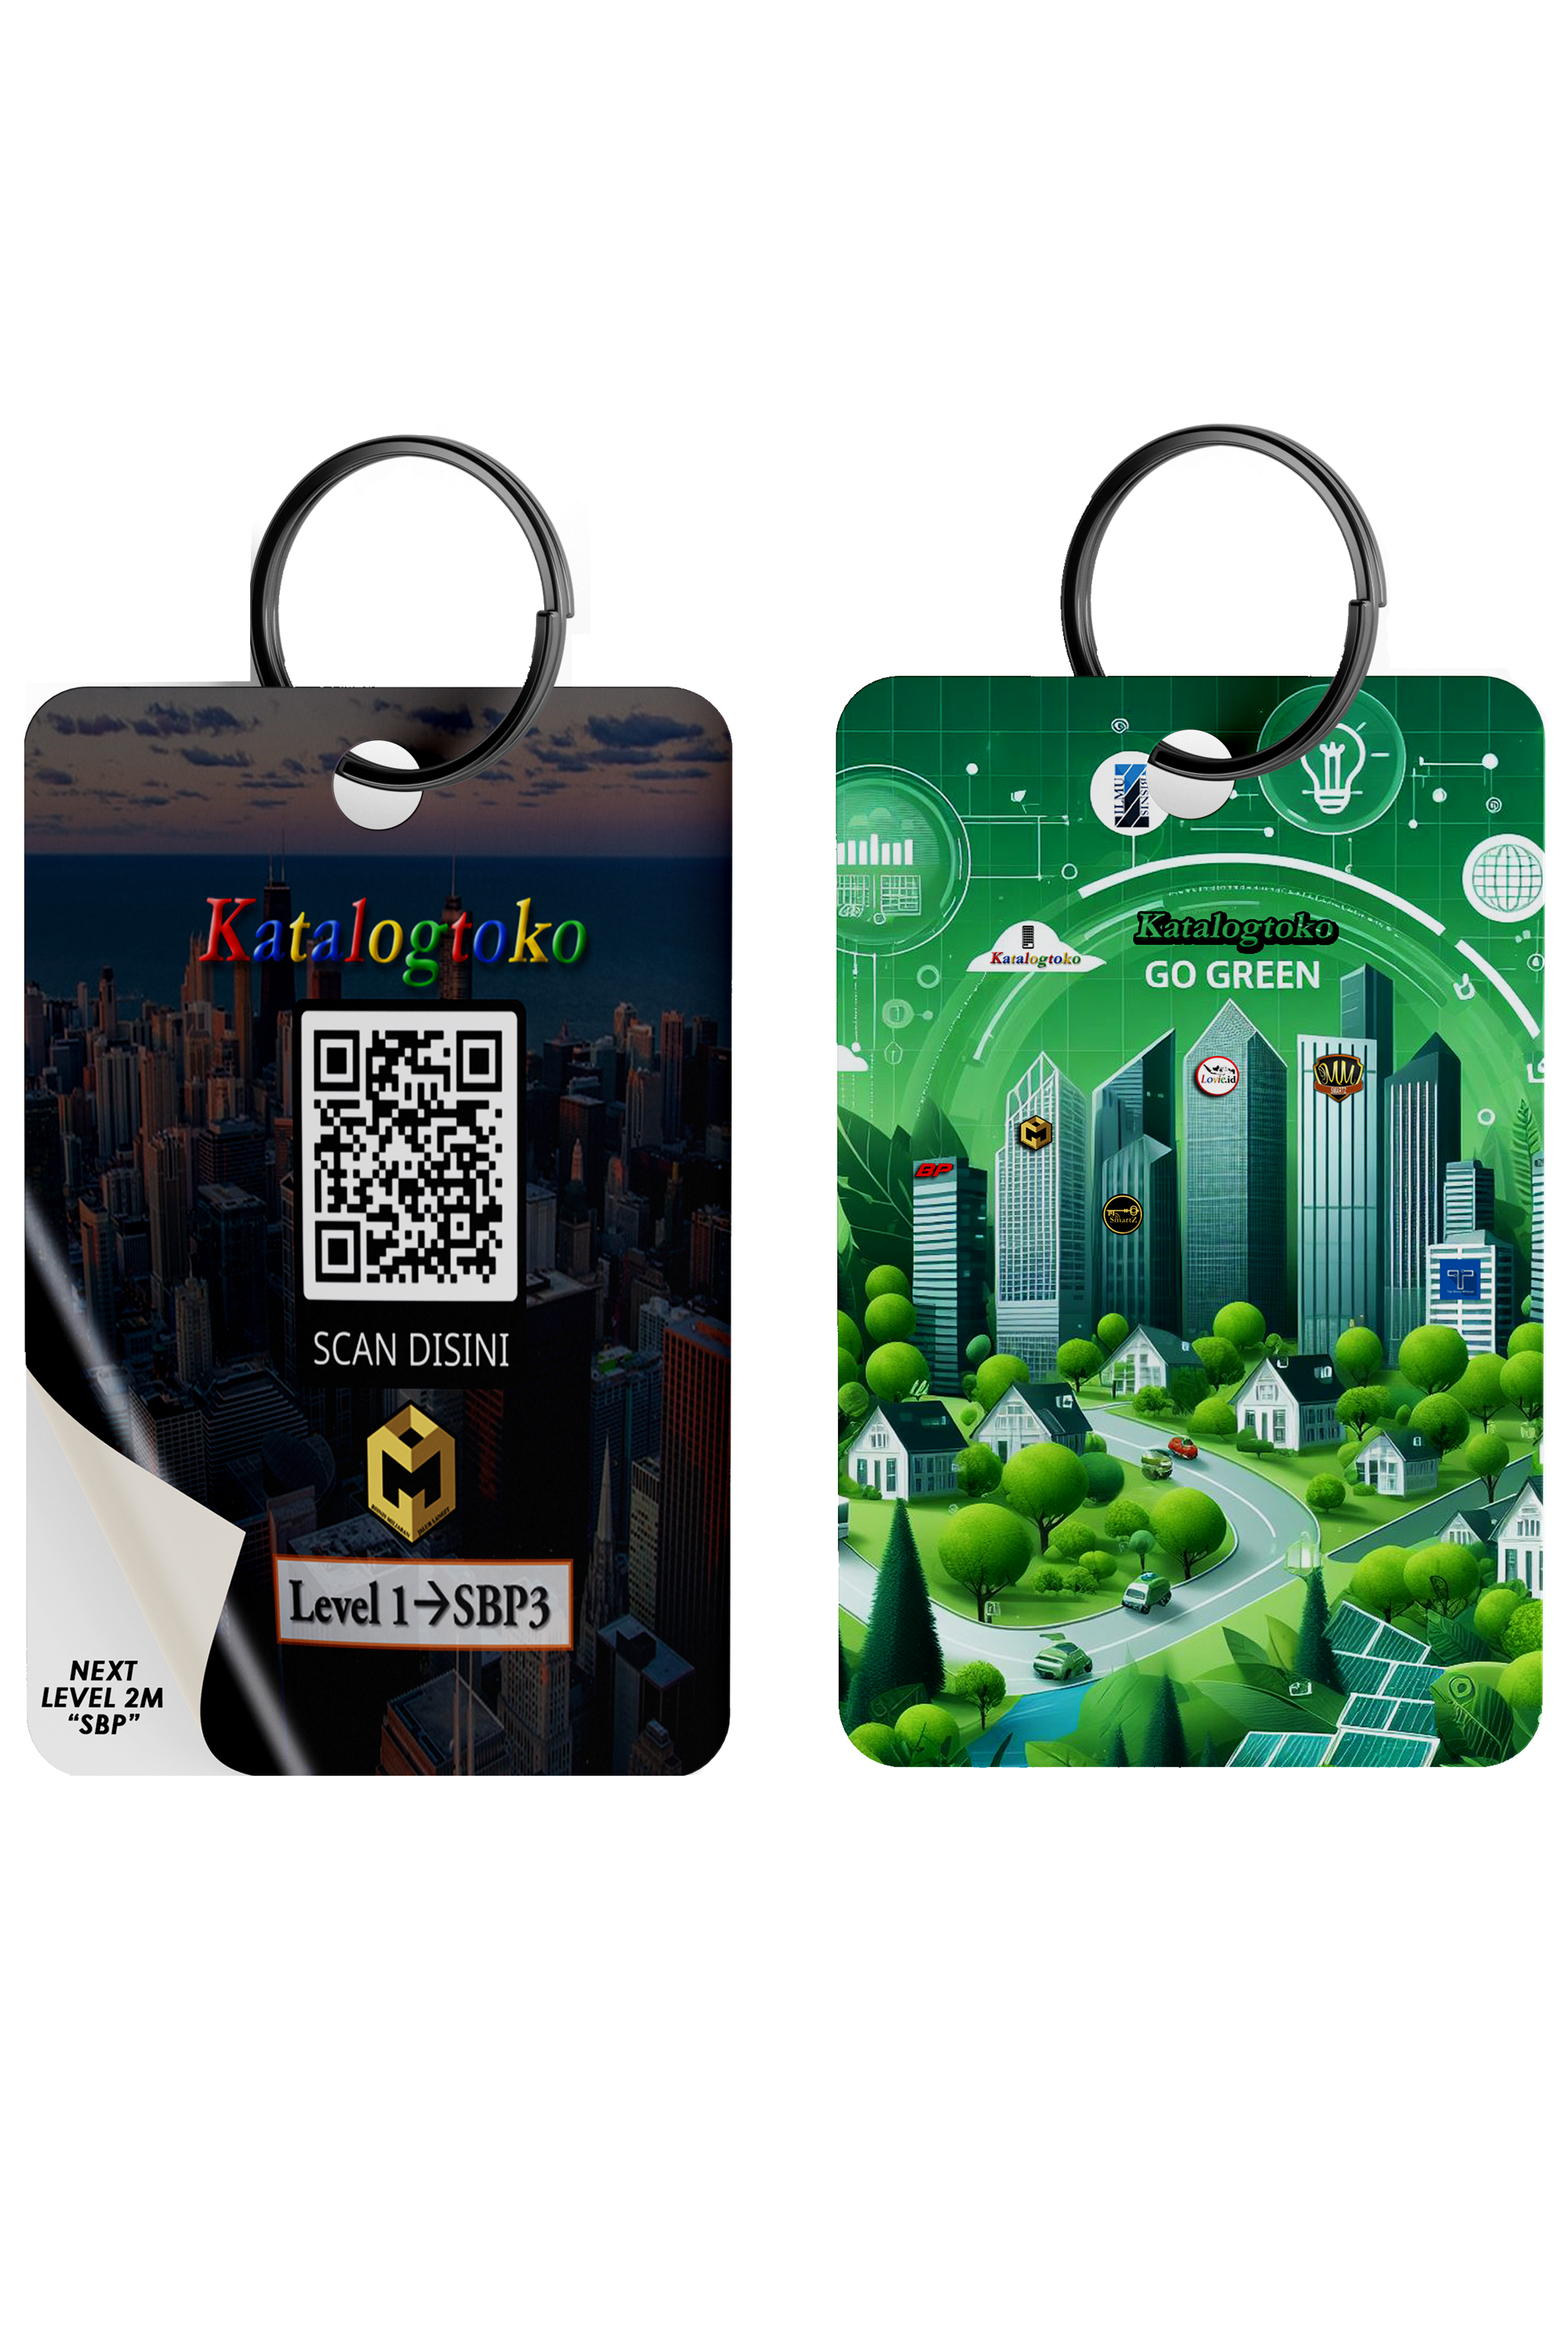 keychain go green_2000x3000 pixel